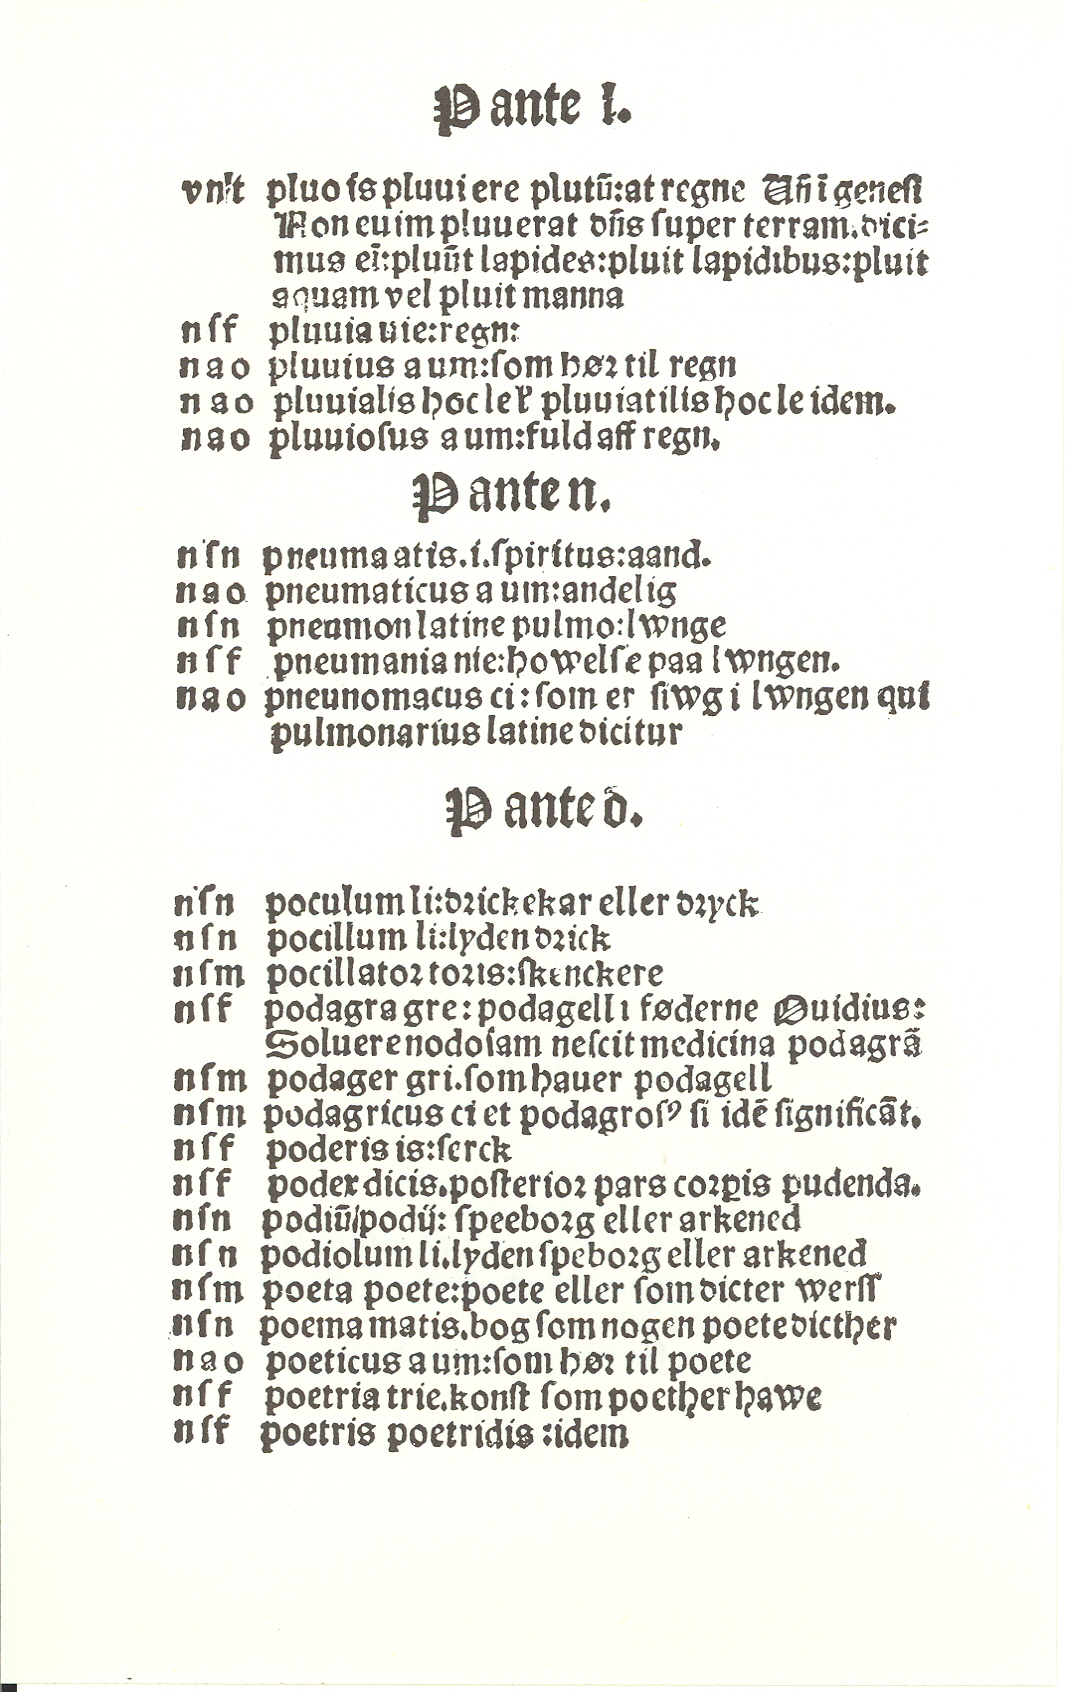 Pedersen 1510, Side: 282